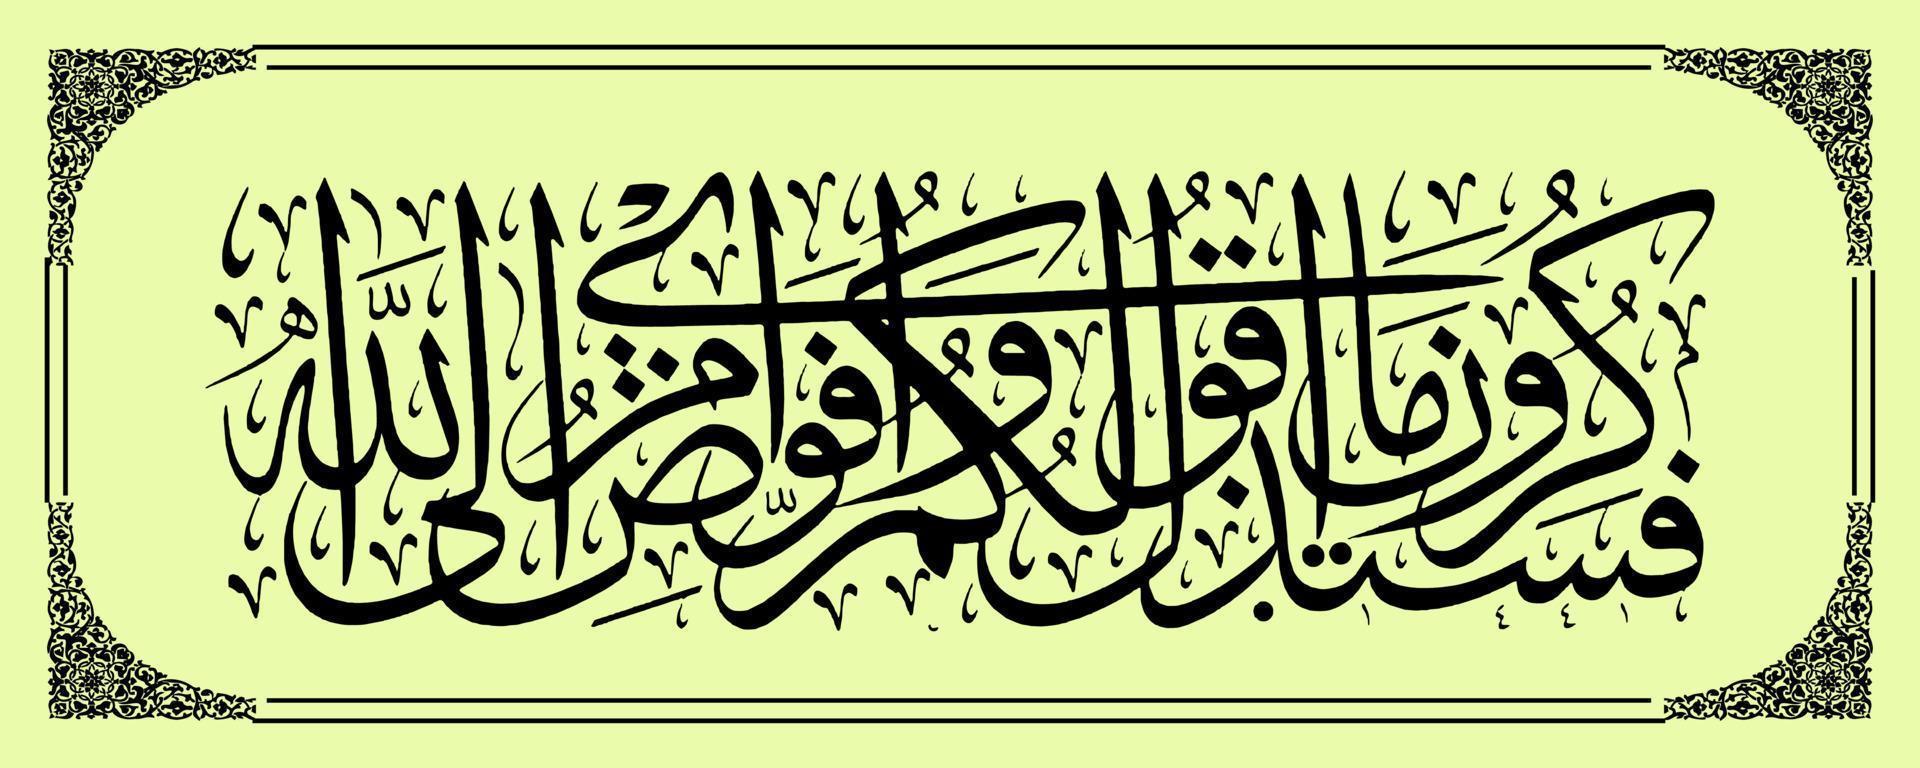 Arabisch kalligrafie, al koran soera al ghafir 44, vertaling vervolgens een dag u zullen onthouden wat ik vertelde jij. en ik vertrekken mijn zaken naar Allah. inderdaad, Allah is zien van zijn bedienden. vector